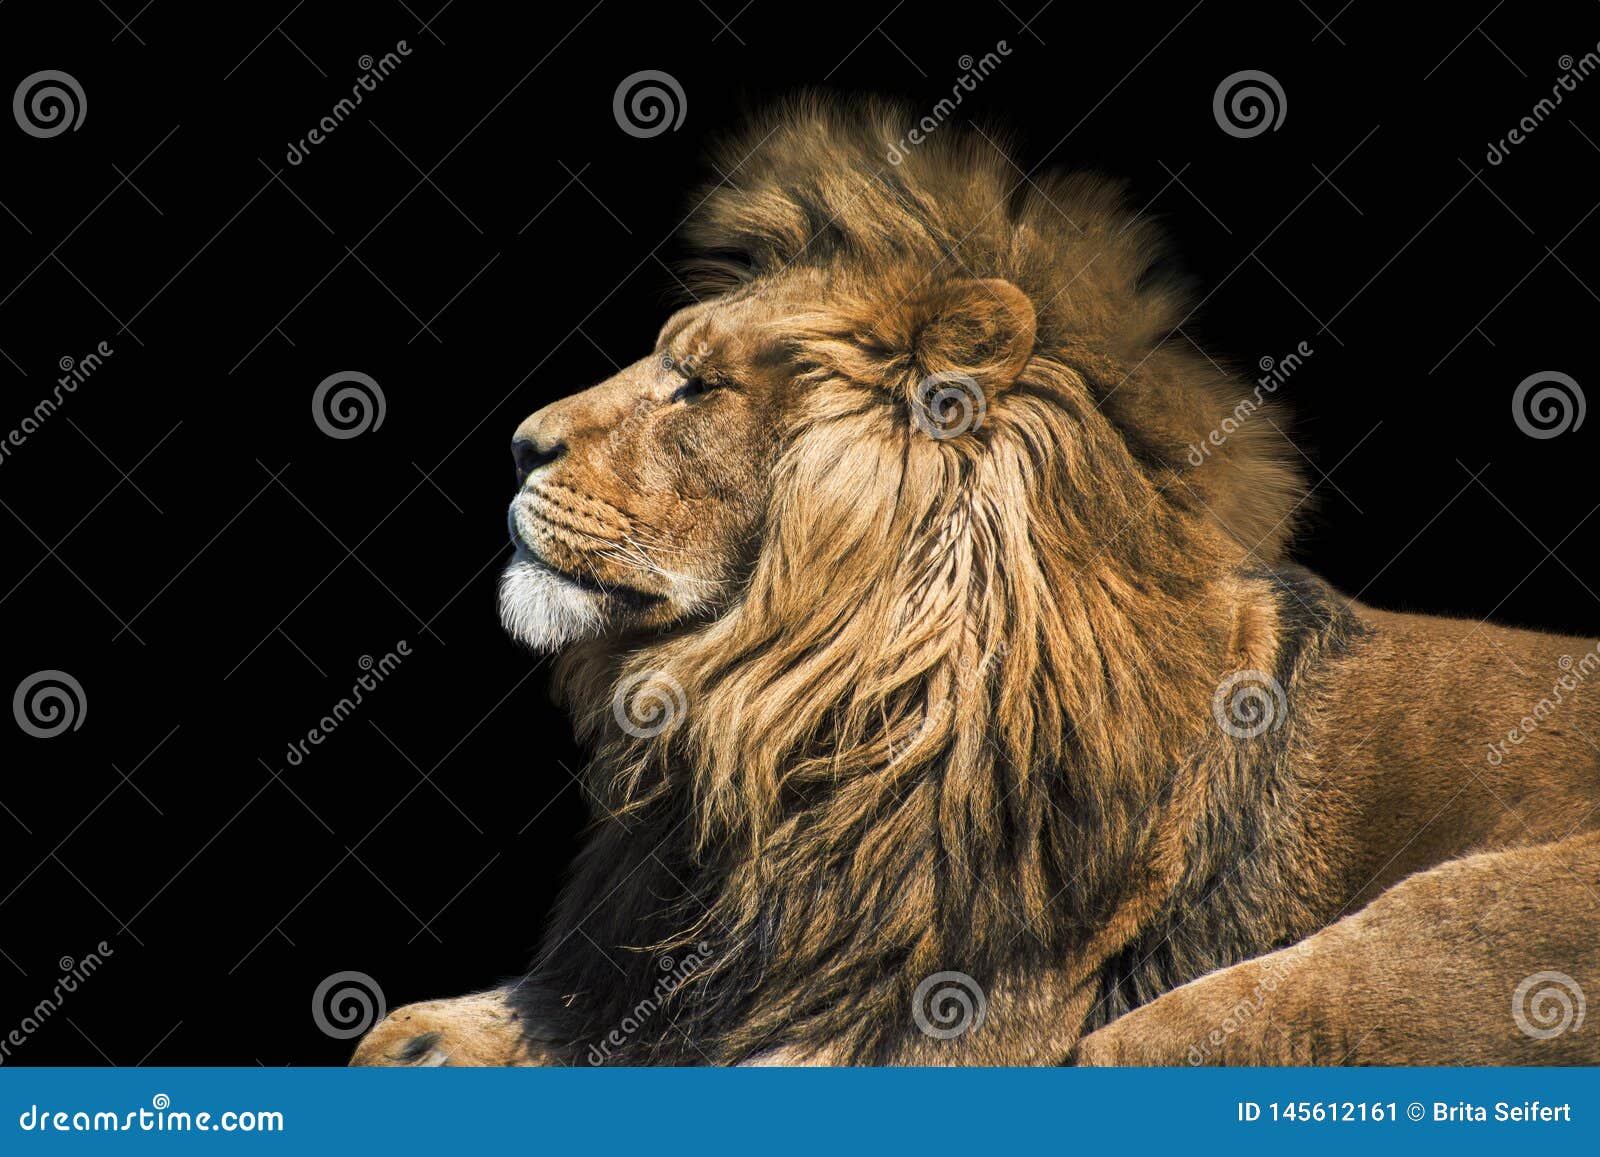 portrait lion on the black. detail face lion. hight quality portrait lion. portrait from animal